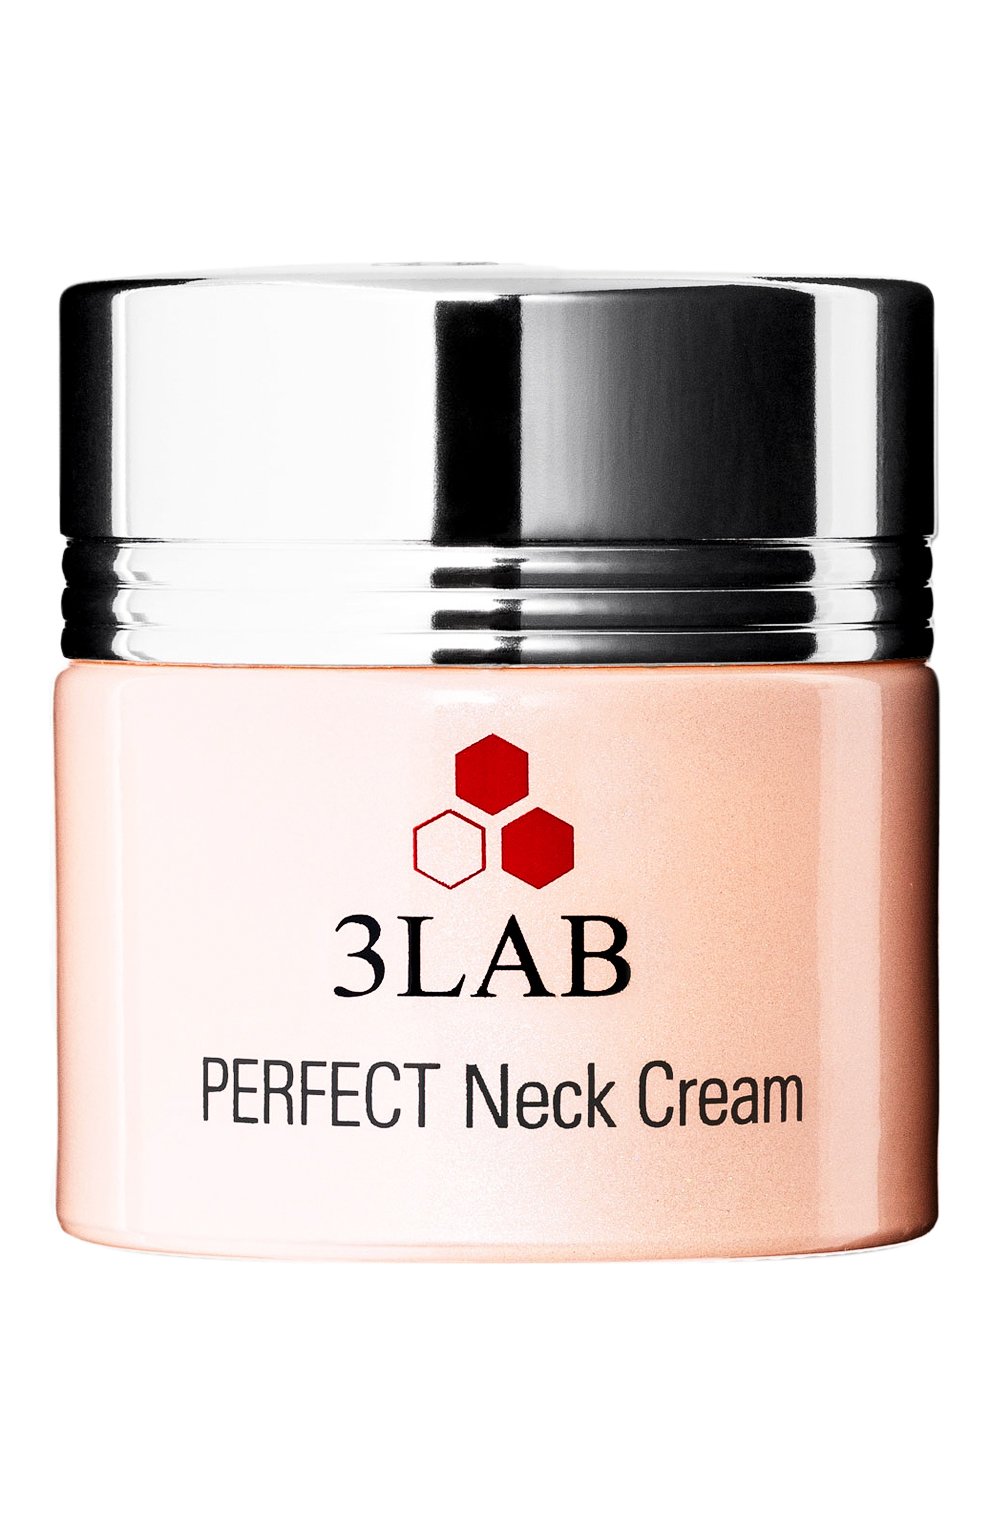 Идеальный крем для шеи perfect neck cream (58g) 3LAB бесцветного цвета, арт. 0686769000910 | Фото 1 (Назначение: Для тела; Тип пр одукта: Кремы)